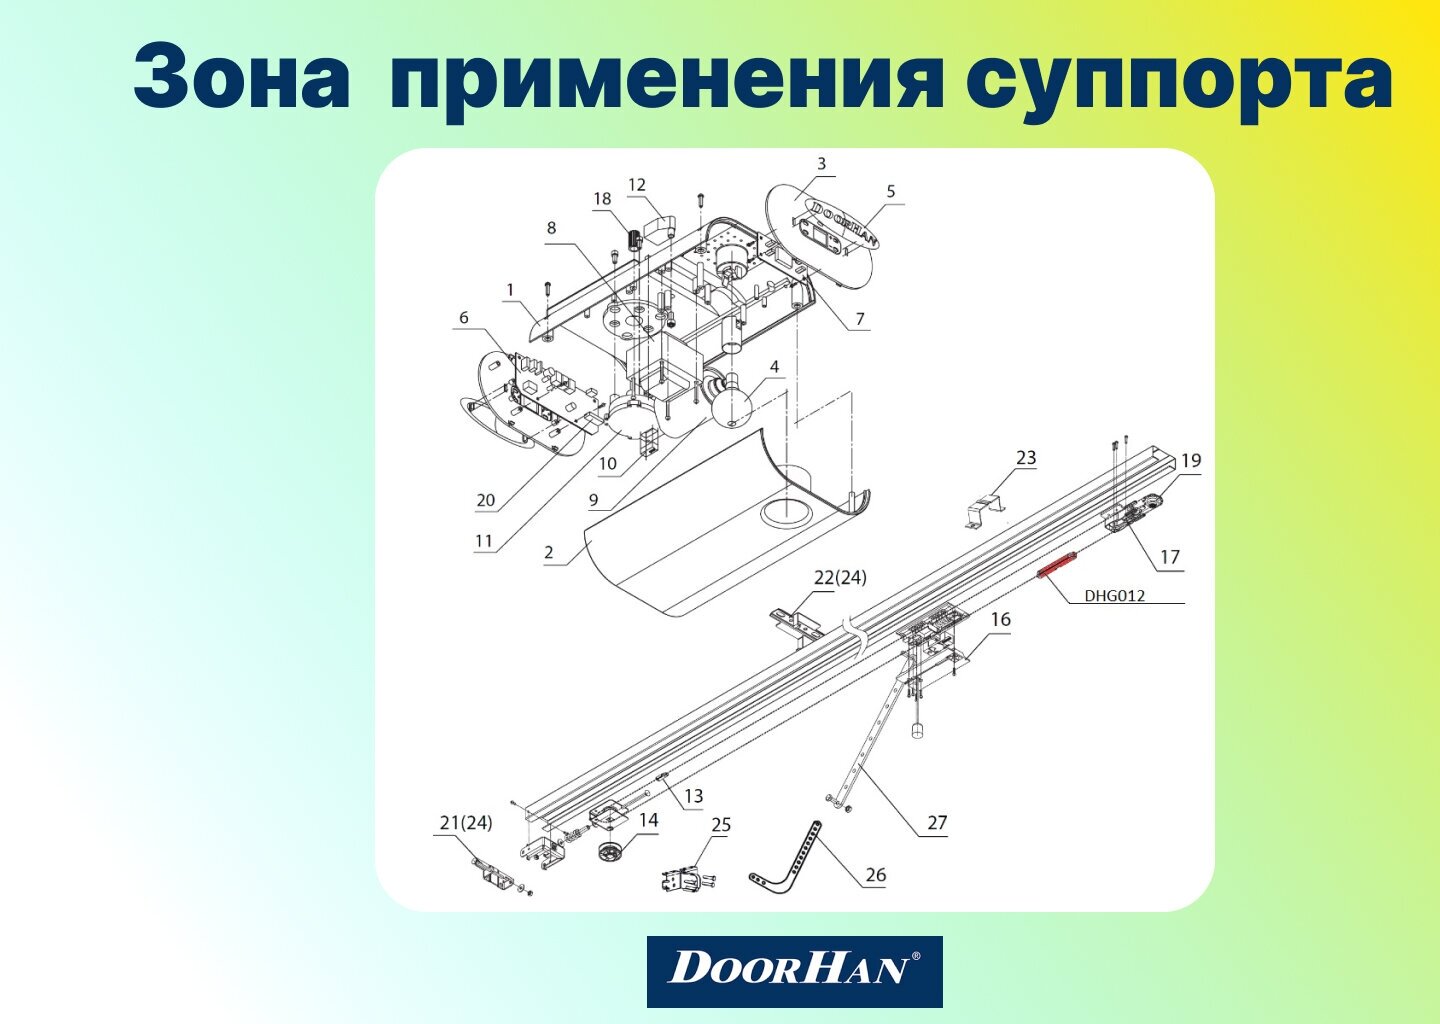 Суппорт DoorHan DHG012 цепной для направляющих SK